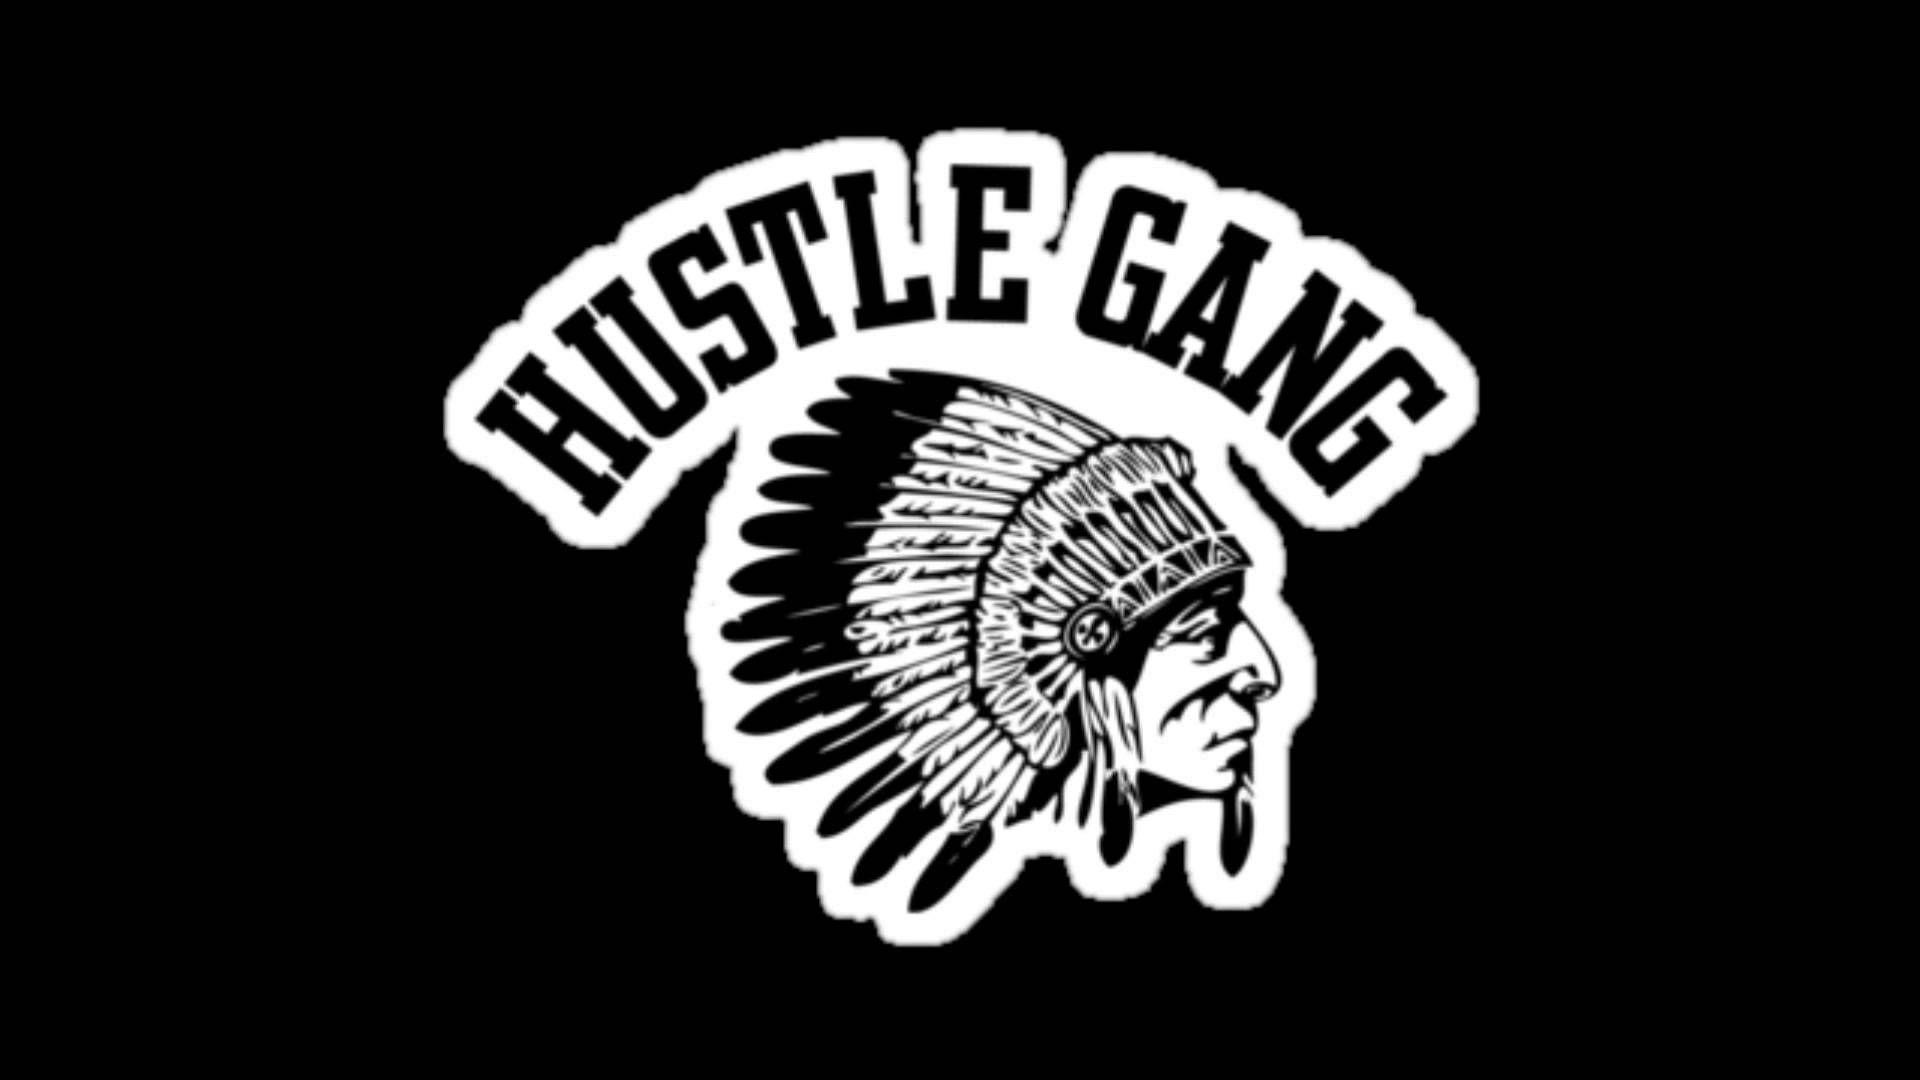 Hustle Gang Wallpaper. Gang tattoos, Gang, Taylors gang